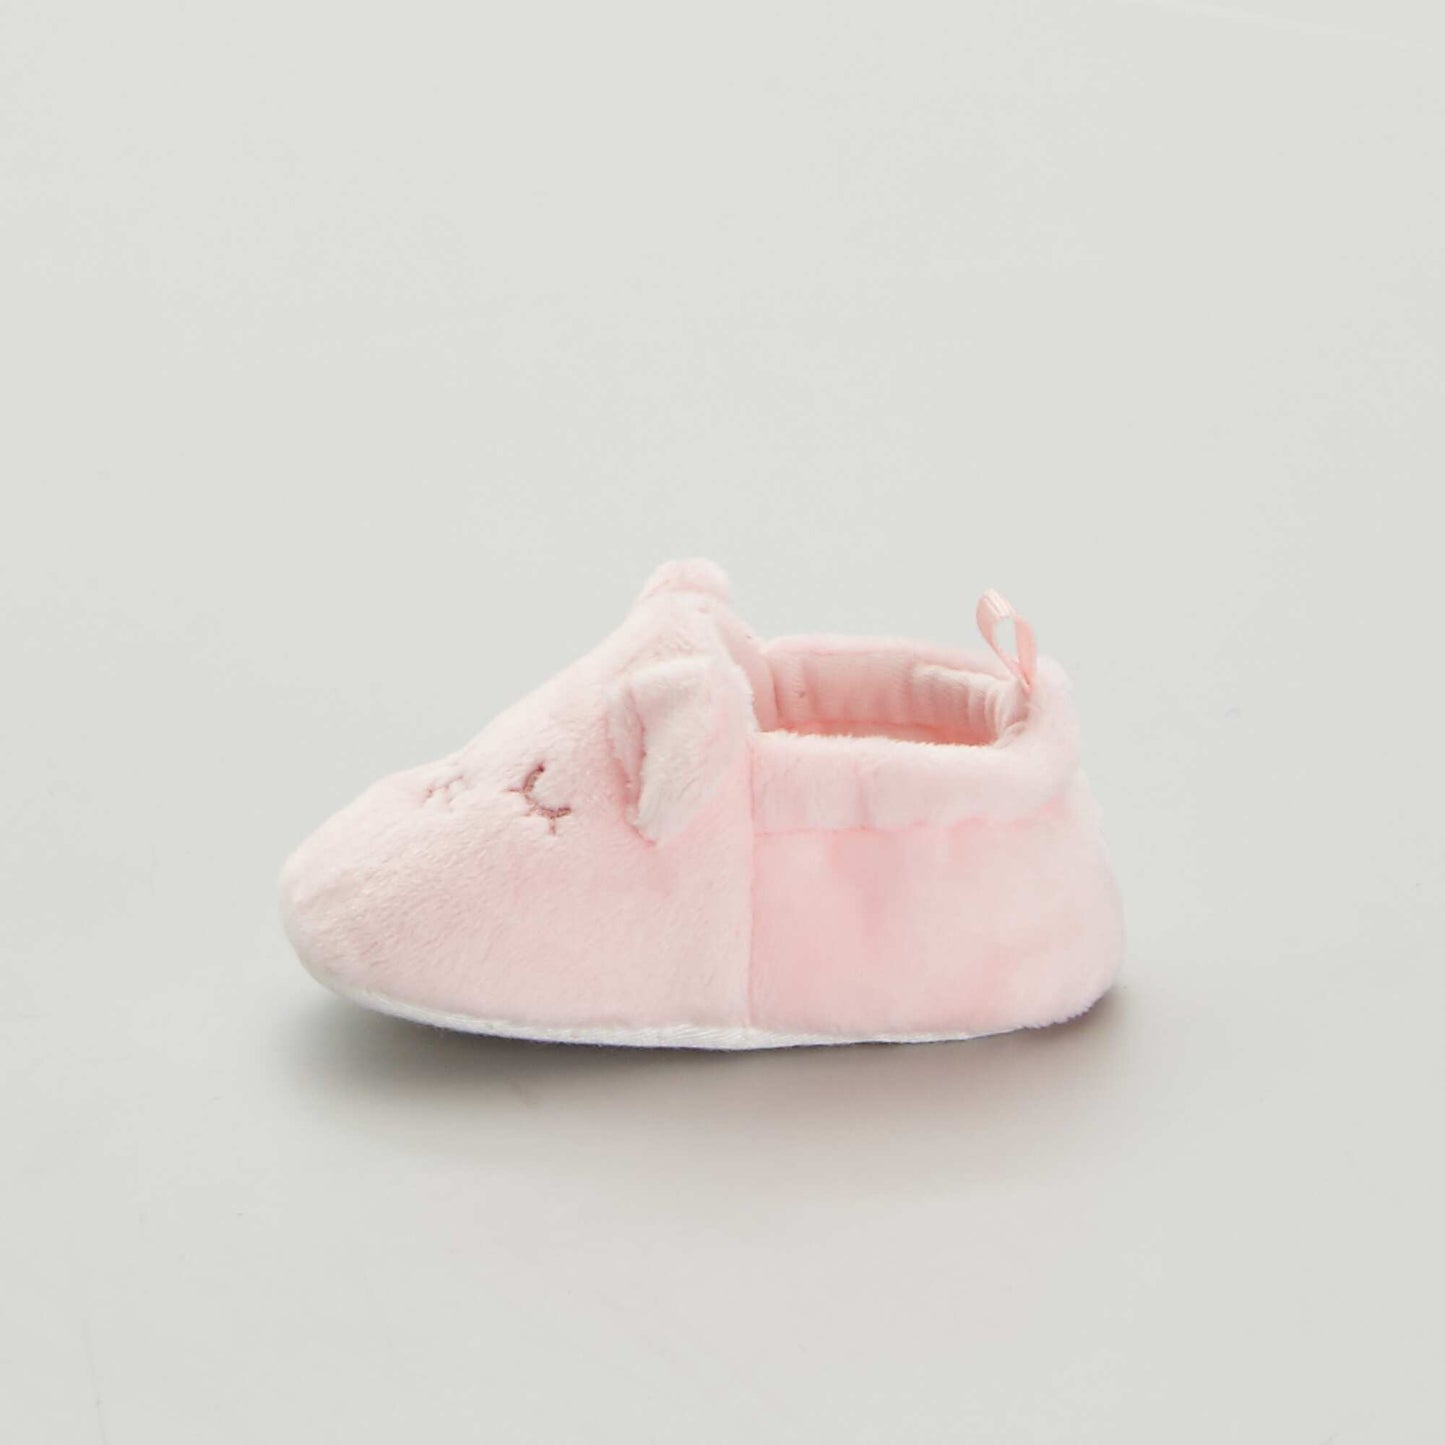 Zapatillas de terciopelo para bebé rosa pálido